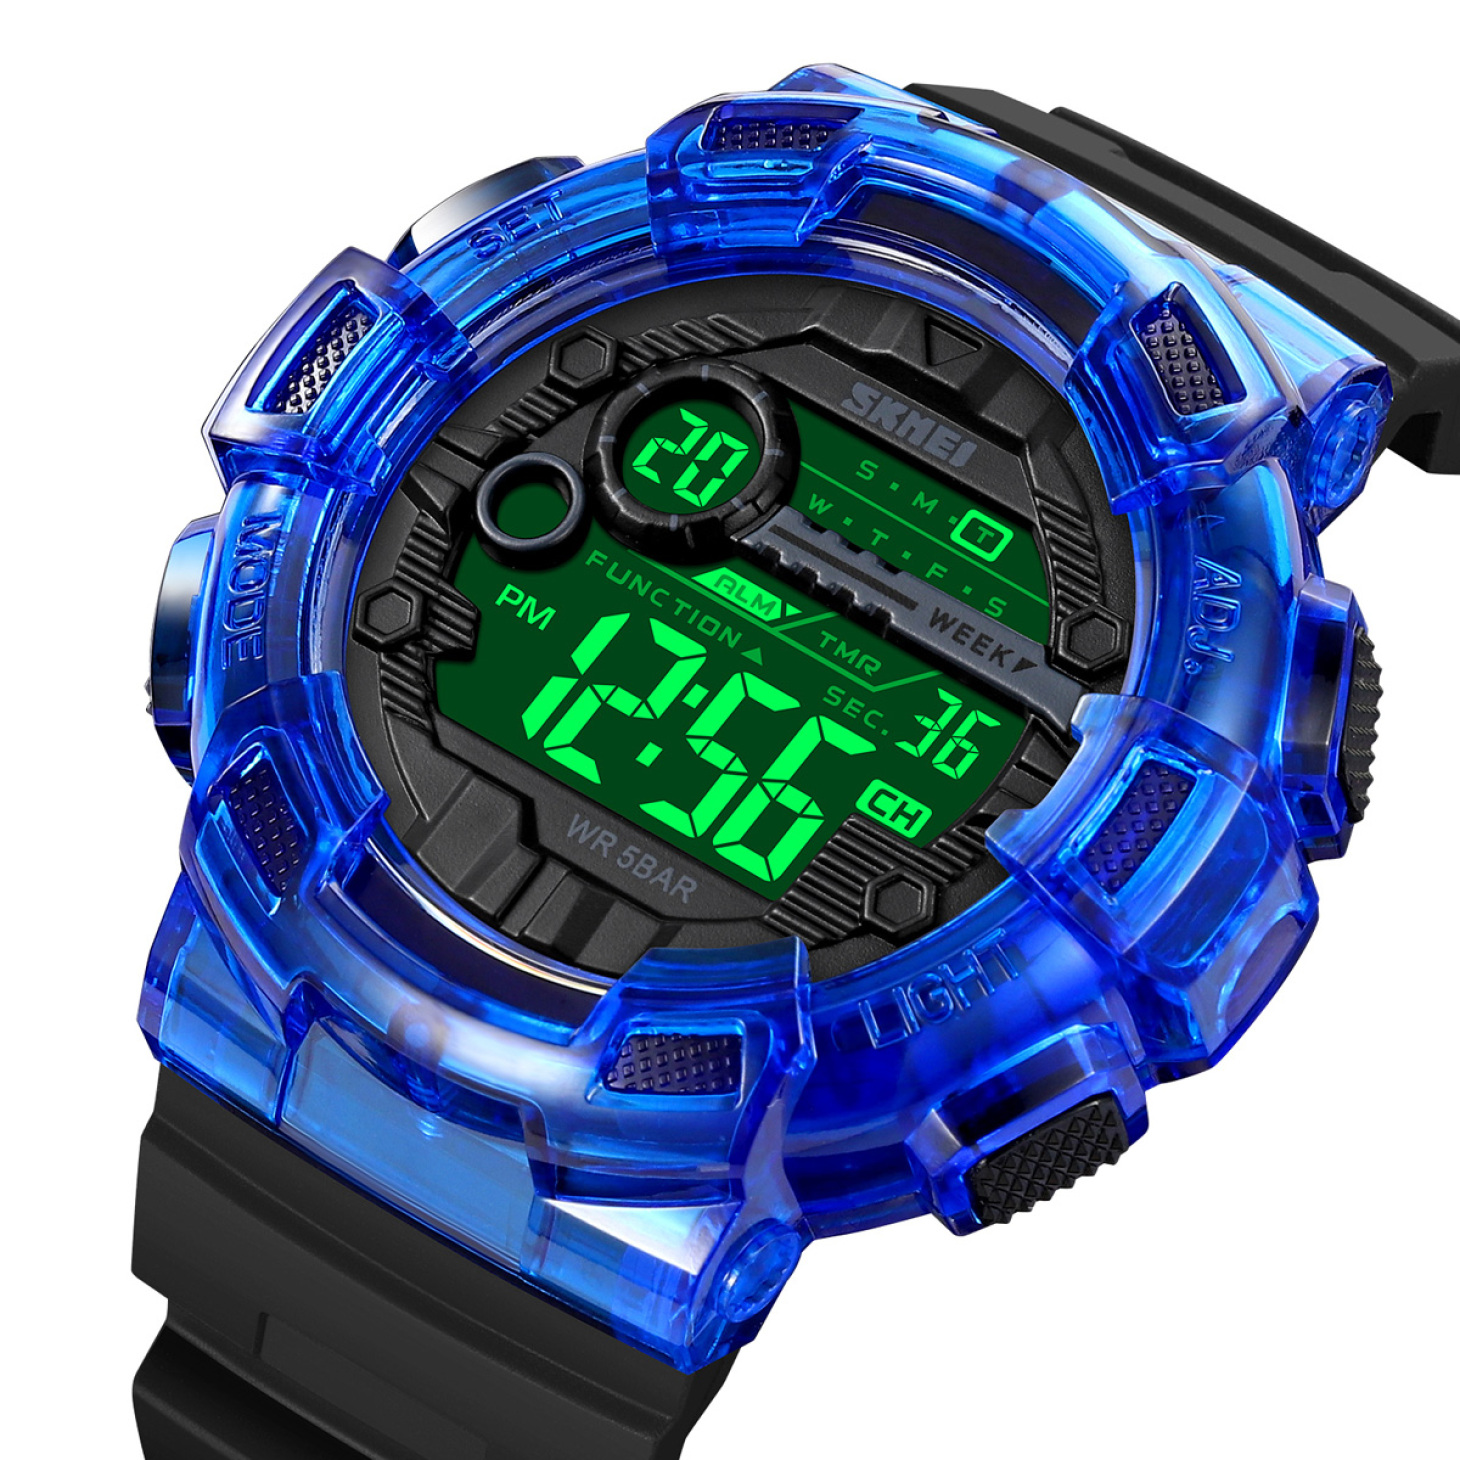  ساعت دیجیتال اسکمی مدل 2110 آبی 